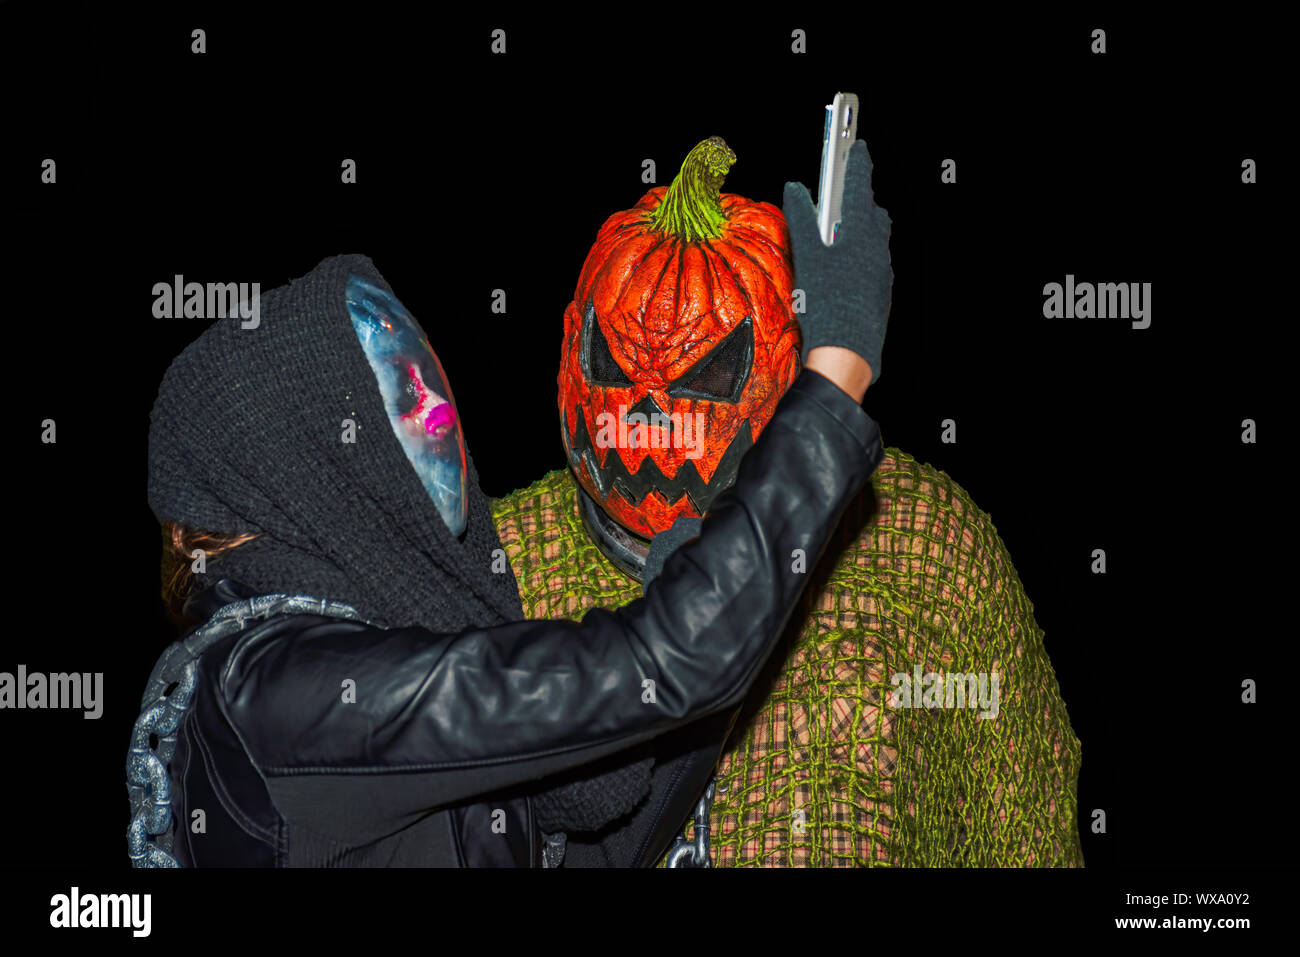 Salem Massachusetts Estados Unidos 10/31/2015. Alguien en traje coger un selfie con cabeza de calabaza. Sólo para uso editorial Foto de stock